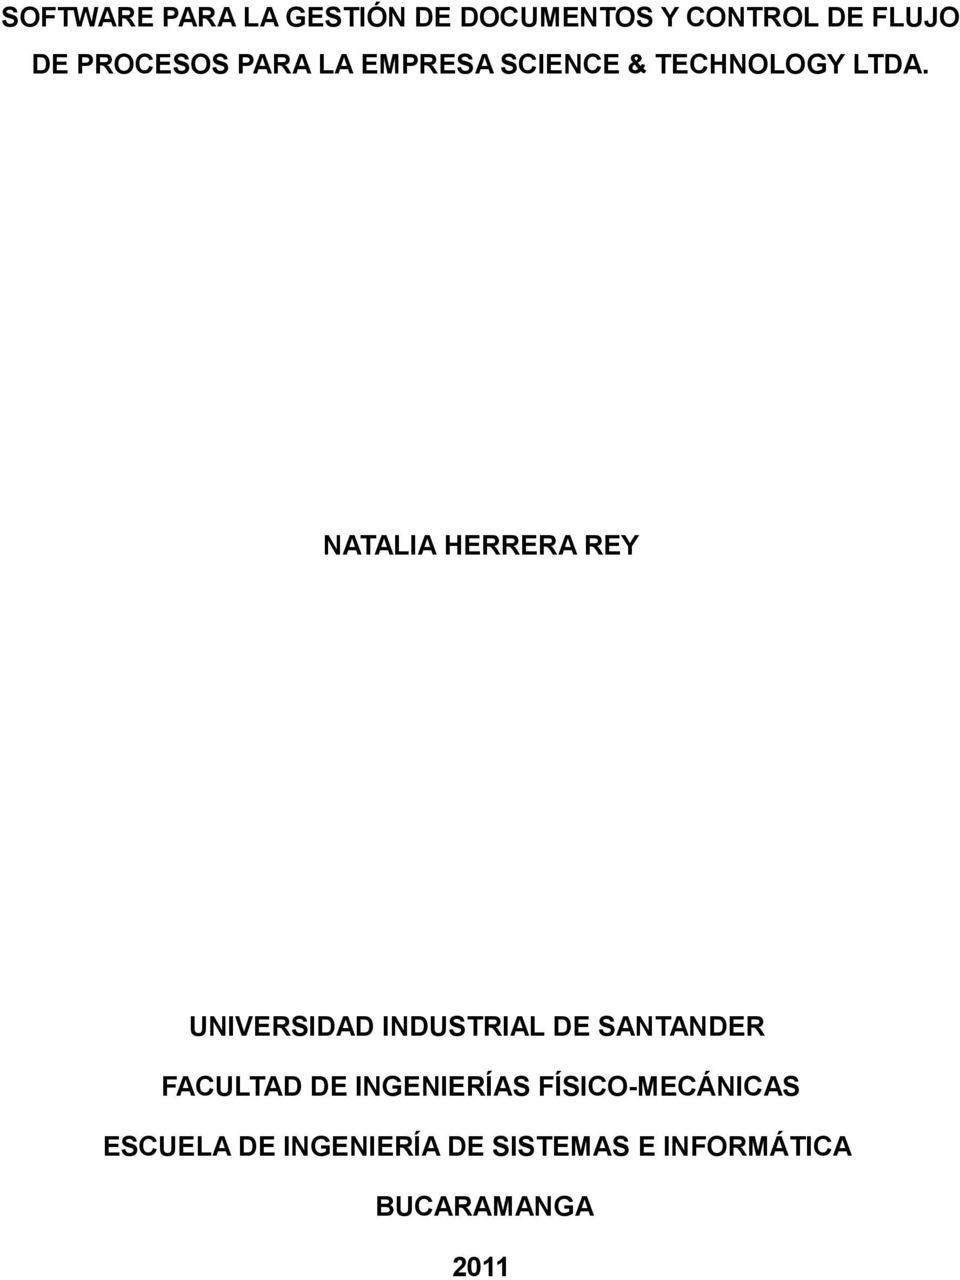 NATALIA HERRERA REY UNIVERSIDAD INDUSTRIAL DE SANTANDER FACULTAD DE